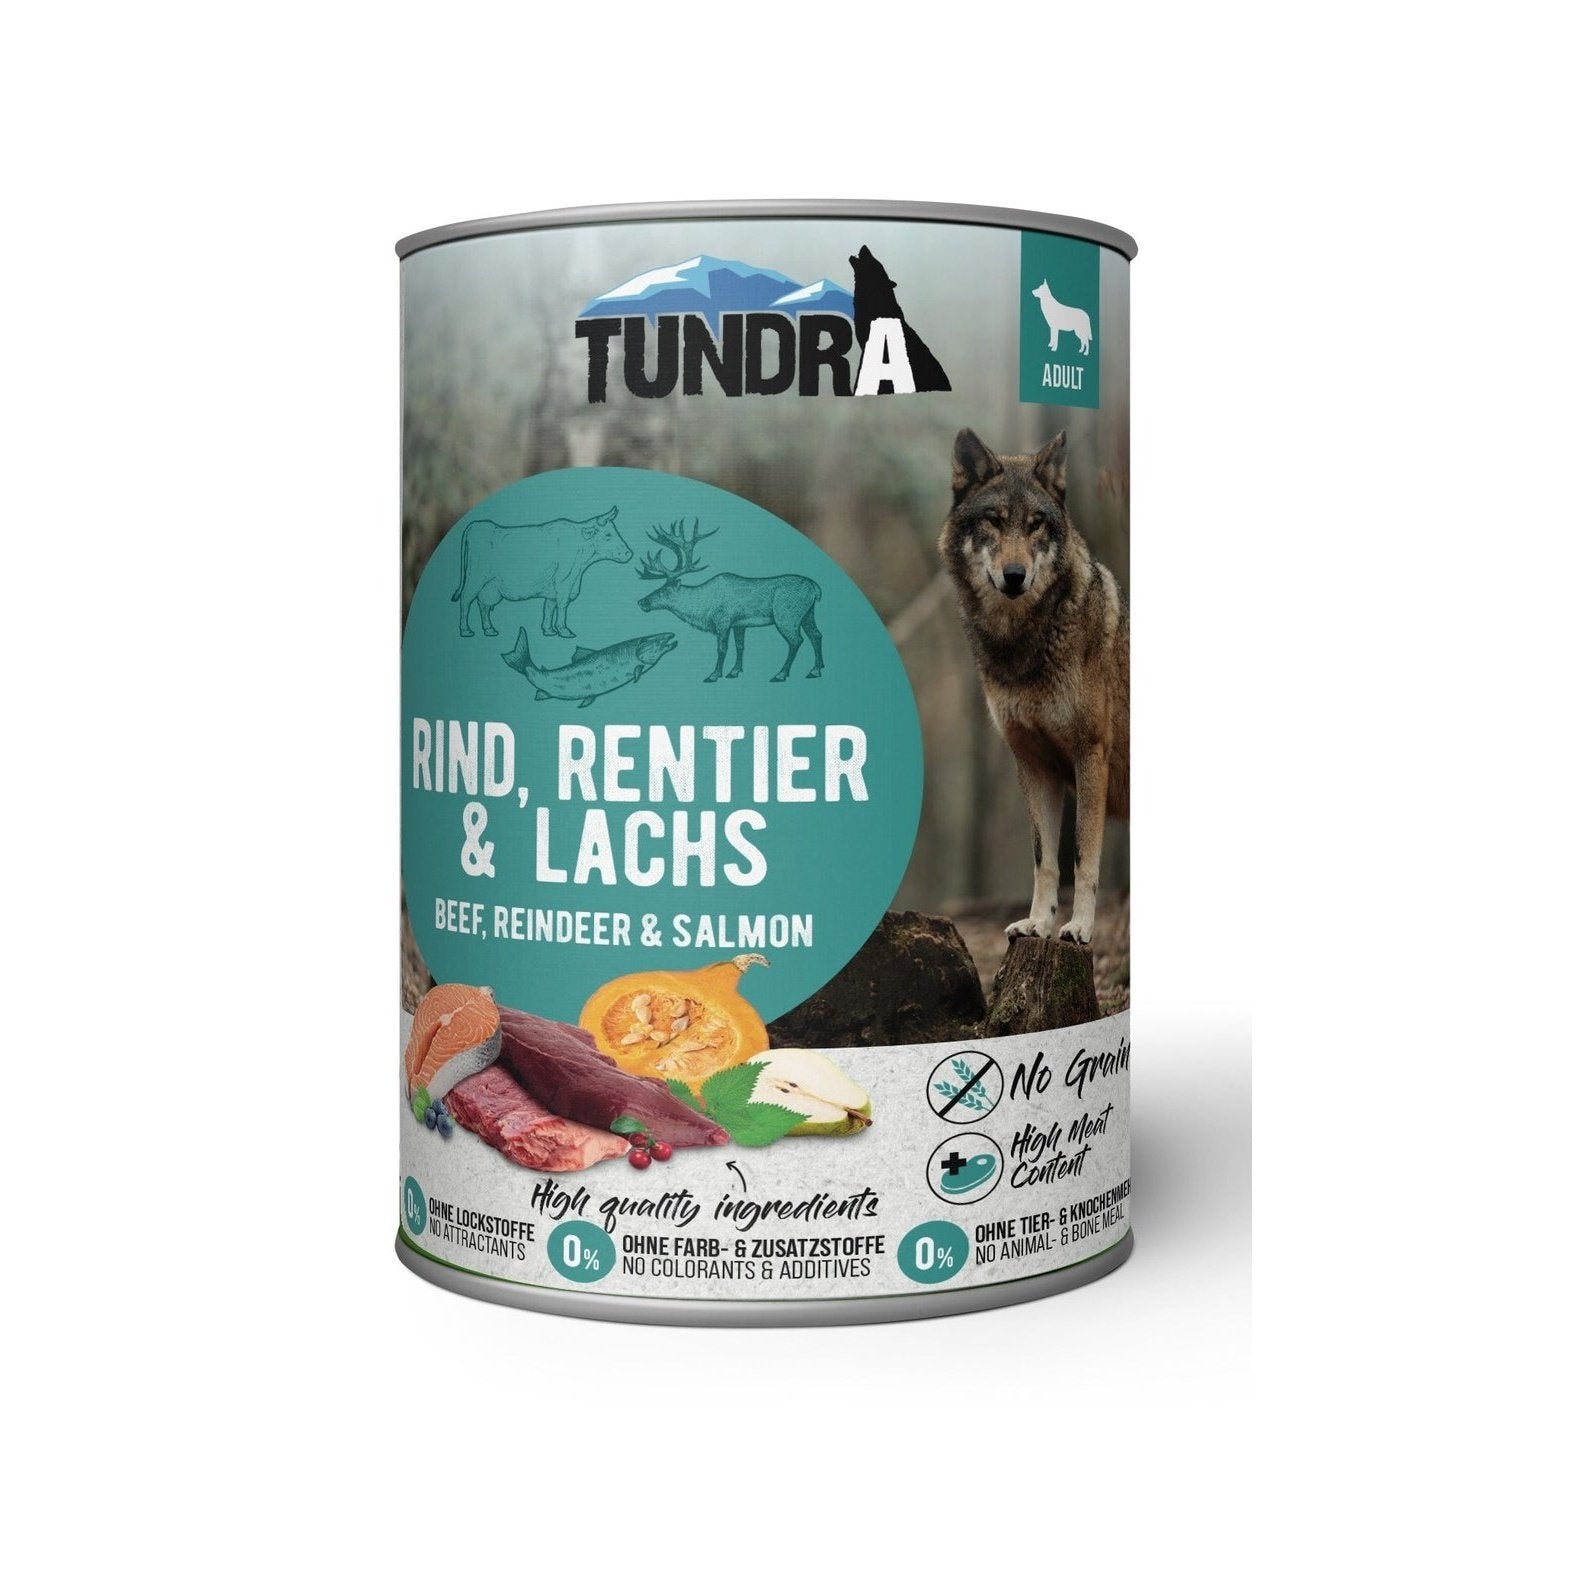 Artikel mit dem Namen Tundra Dog Rind, Rentier & Lachs Dose im Shop von zoo.de , dem Onlineshop für nachhaltiges Hundefutter und Katzenfutter.